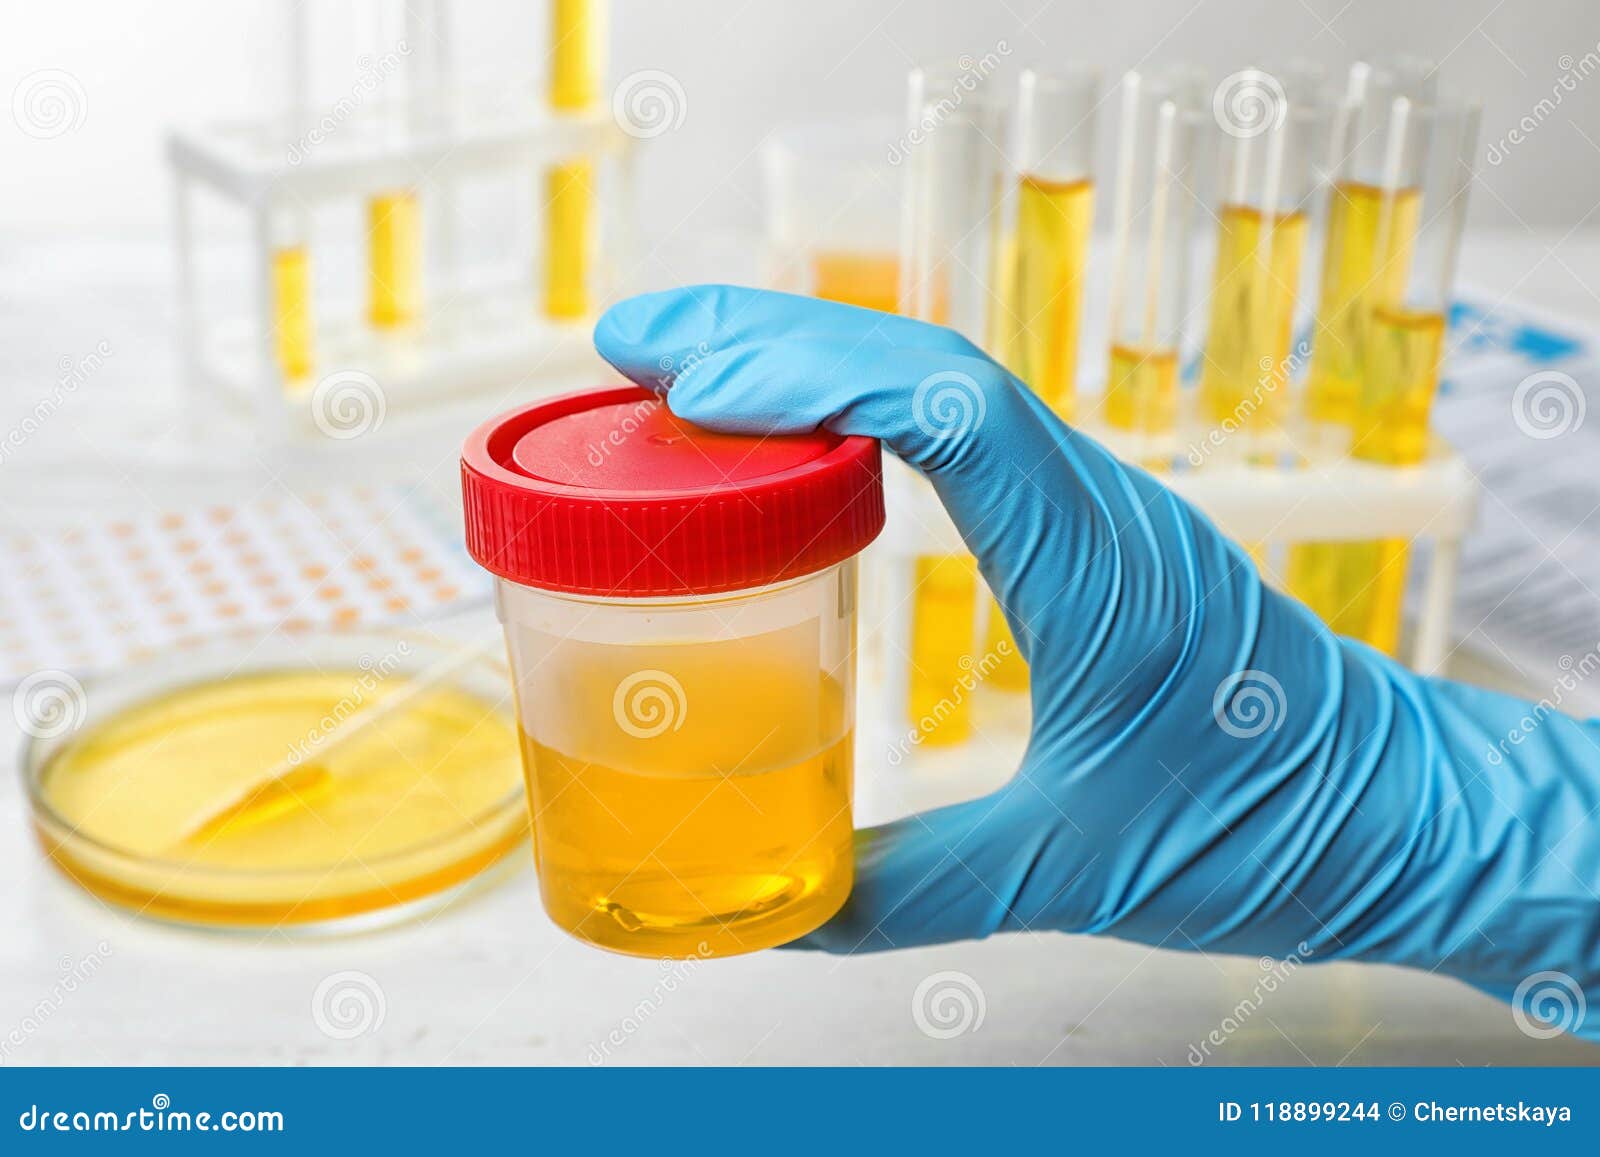 le technicien tient un échantillon d'urine pour le test de